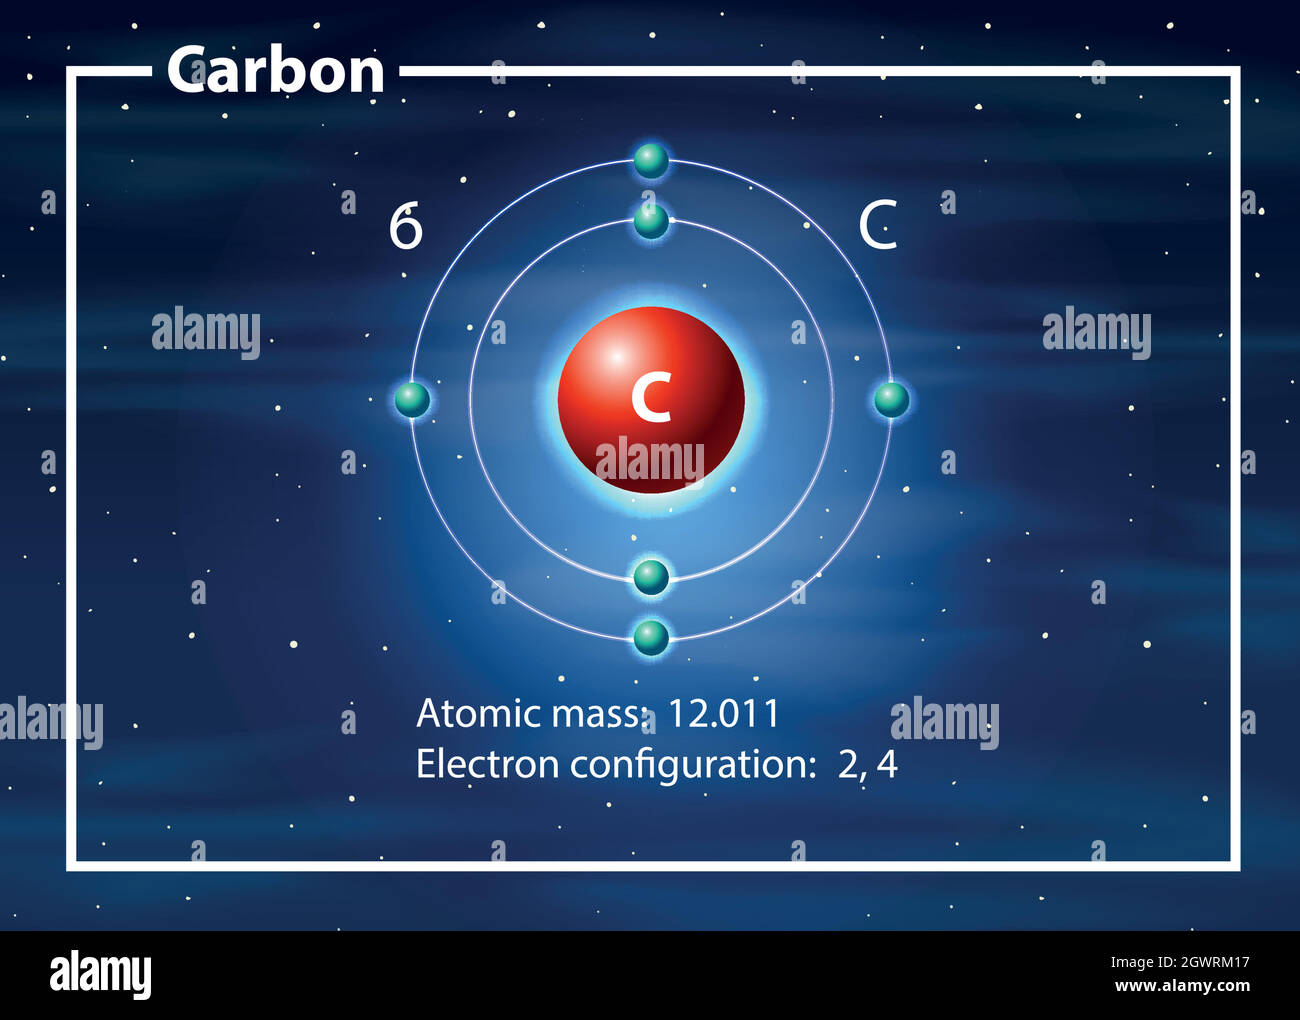 Carbon atom diagram concept Stock Vector